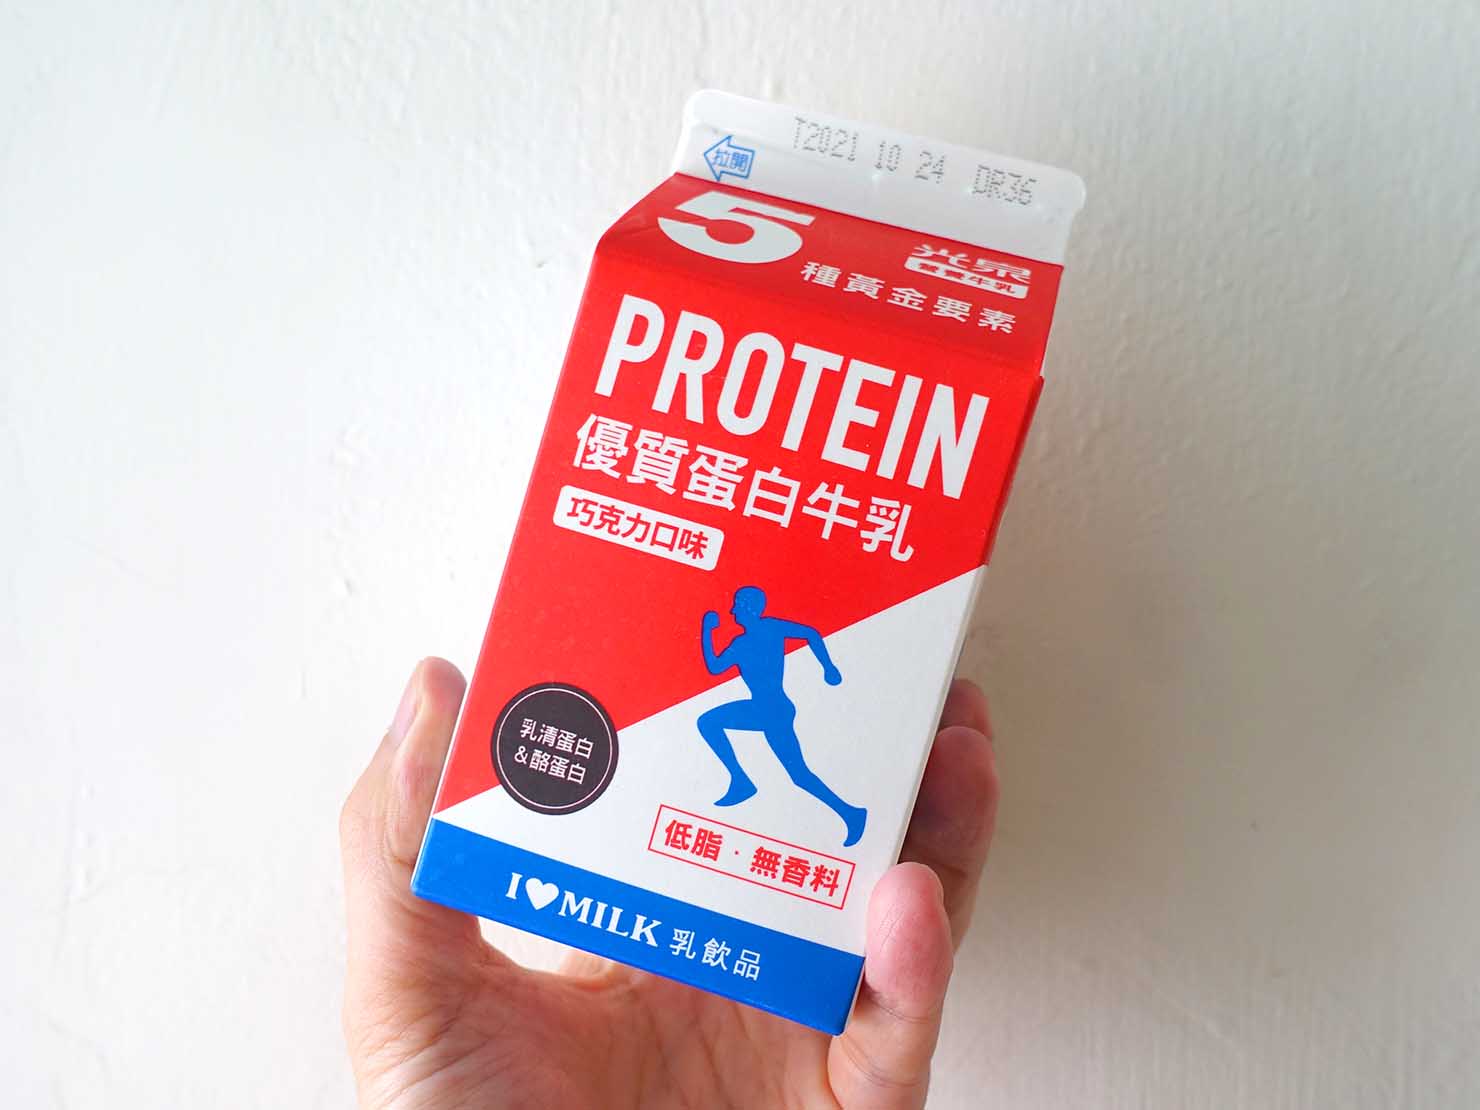 ジムトレ後にピッタリな台湾のコンビニグルメ「光泉優質蛋白牛乳」のパッケージ